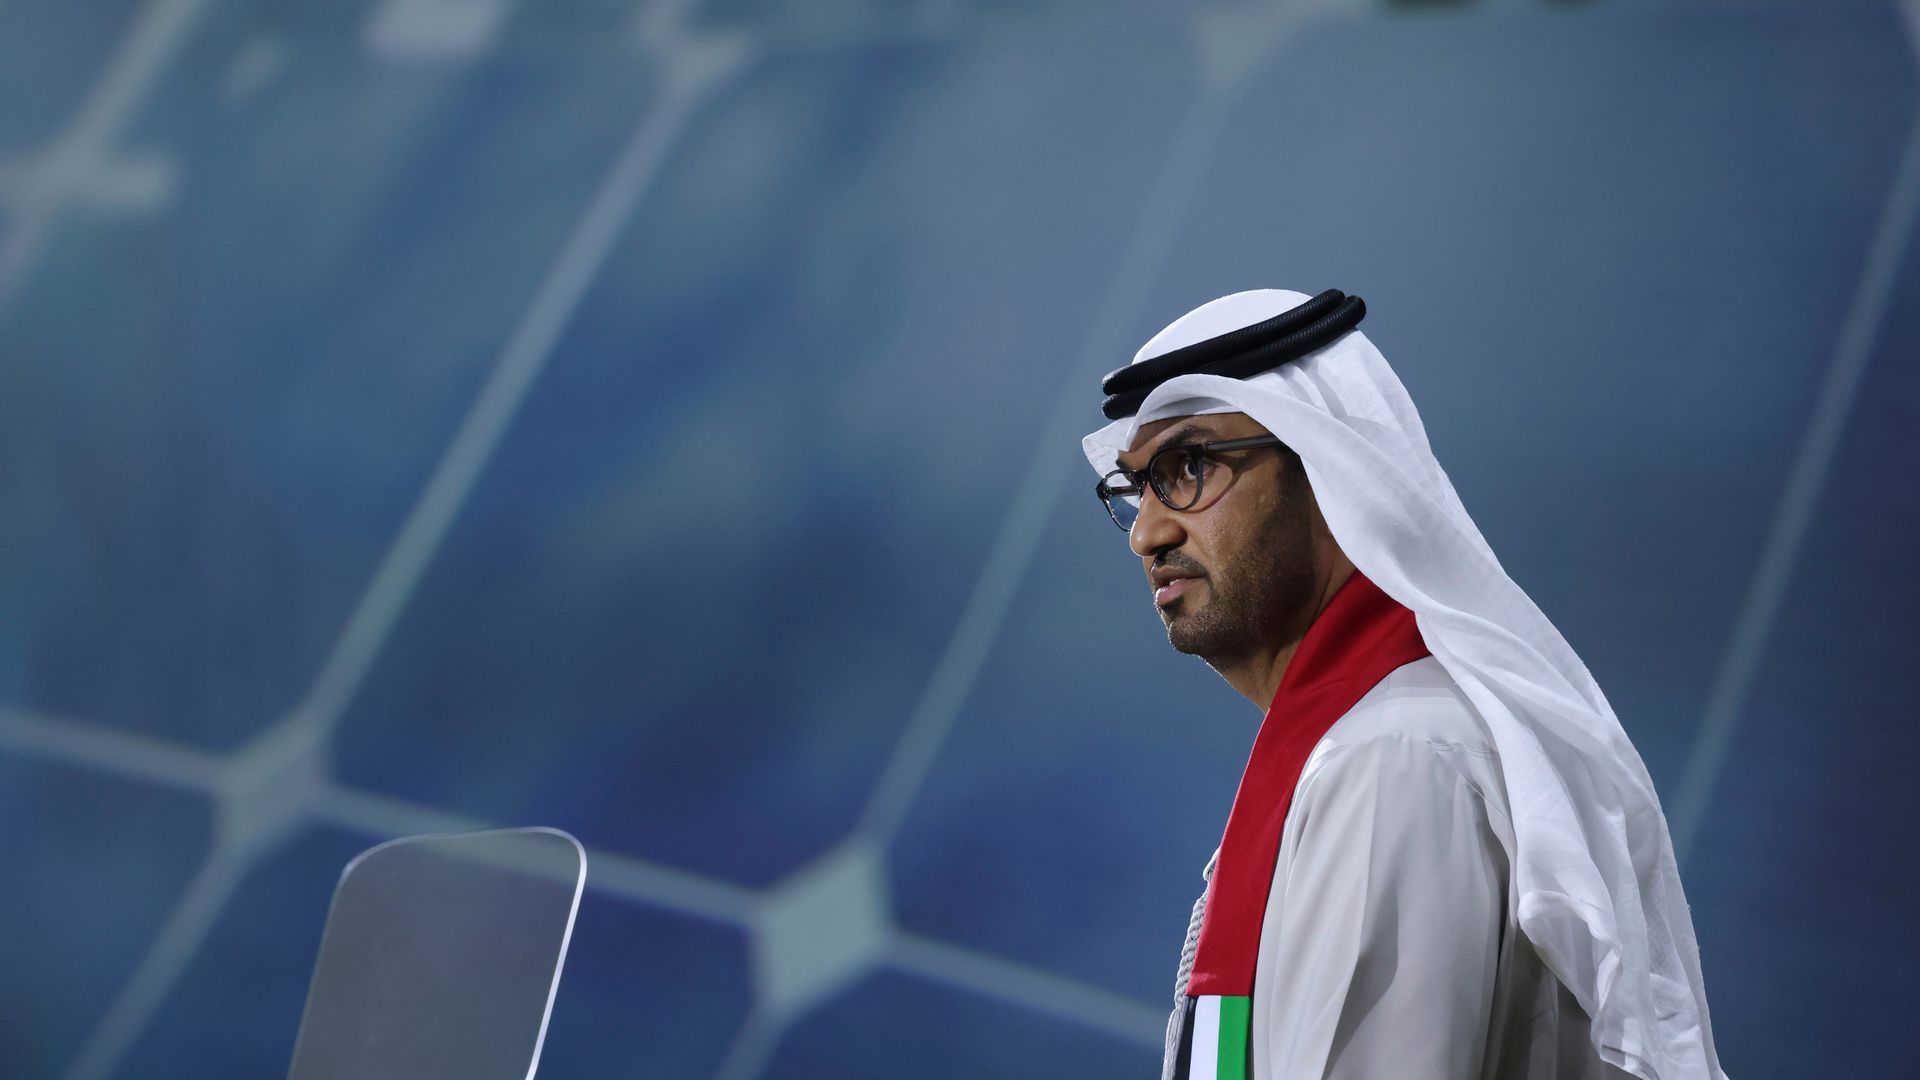 cop28-präsident sultan al jaber hält ausstieg aus fossilen energien für unnötig